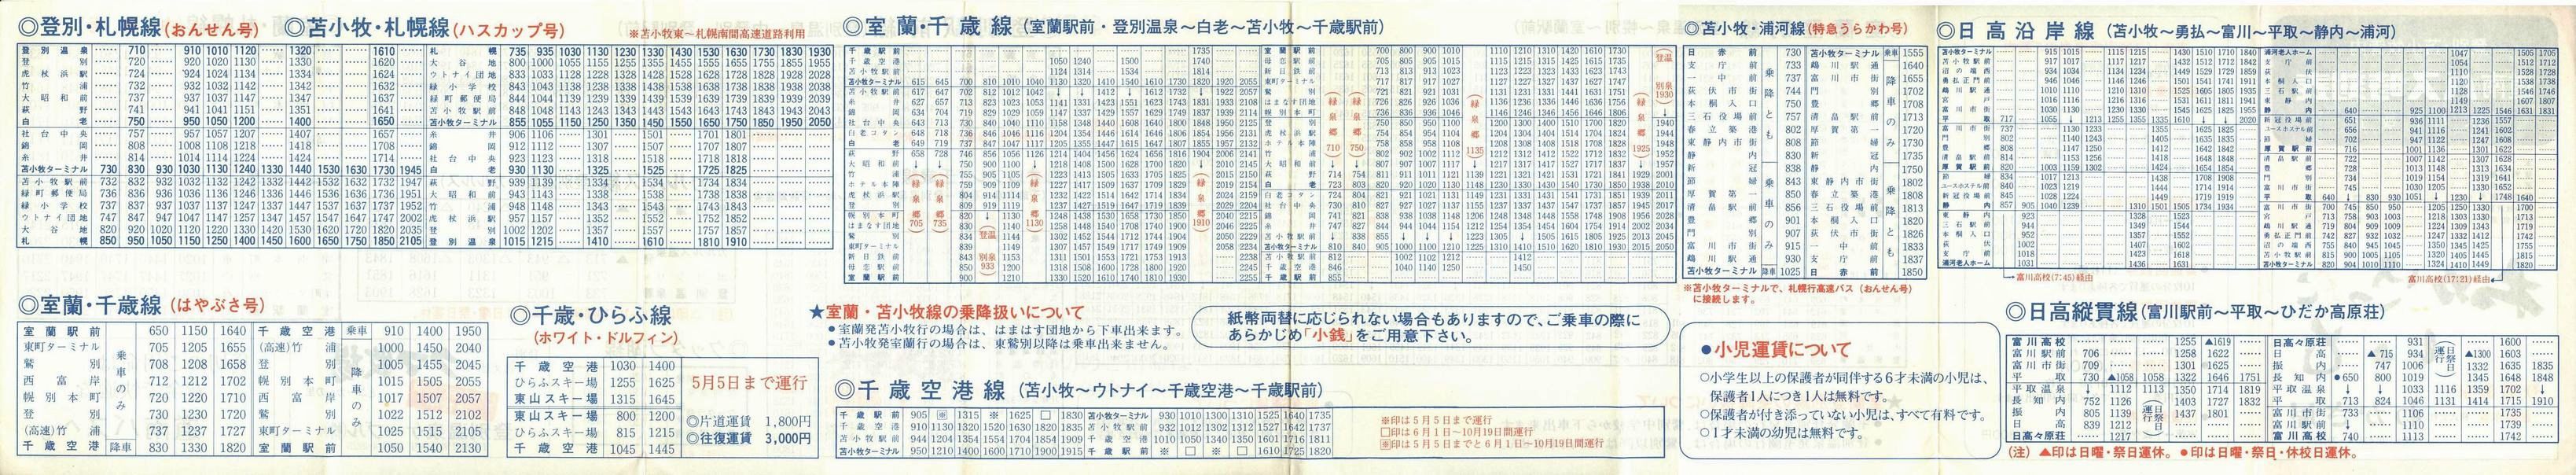 1986-04-01改正_道南バス_登別・苫小牧管内時刻表裏面